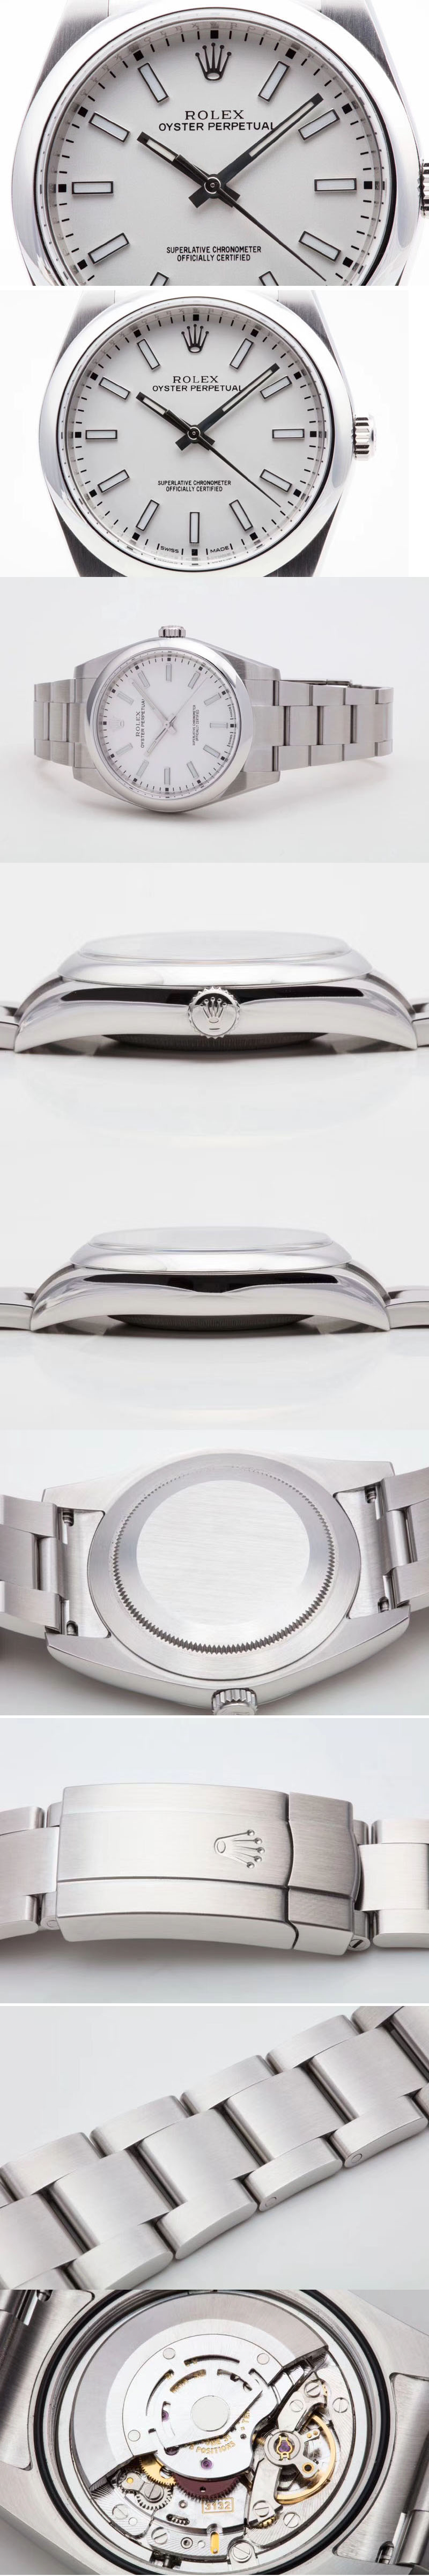 Replica Rolex Oyster Perpetual 39mm (Ref.: 114300)